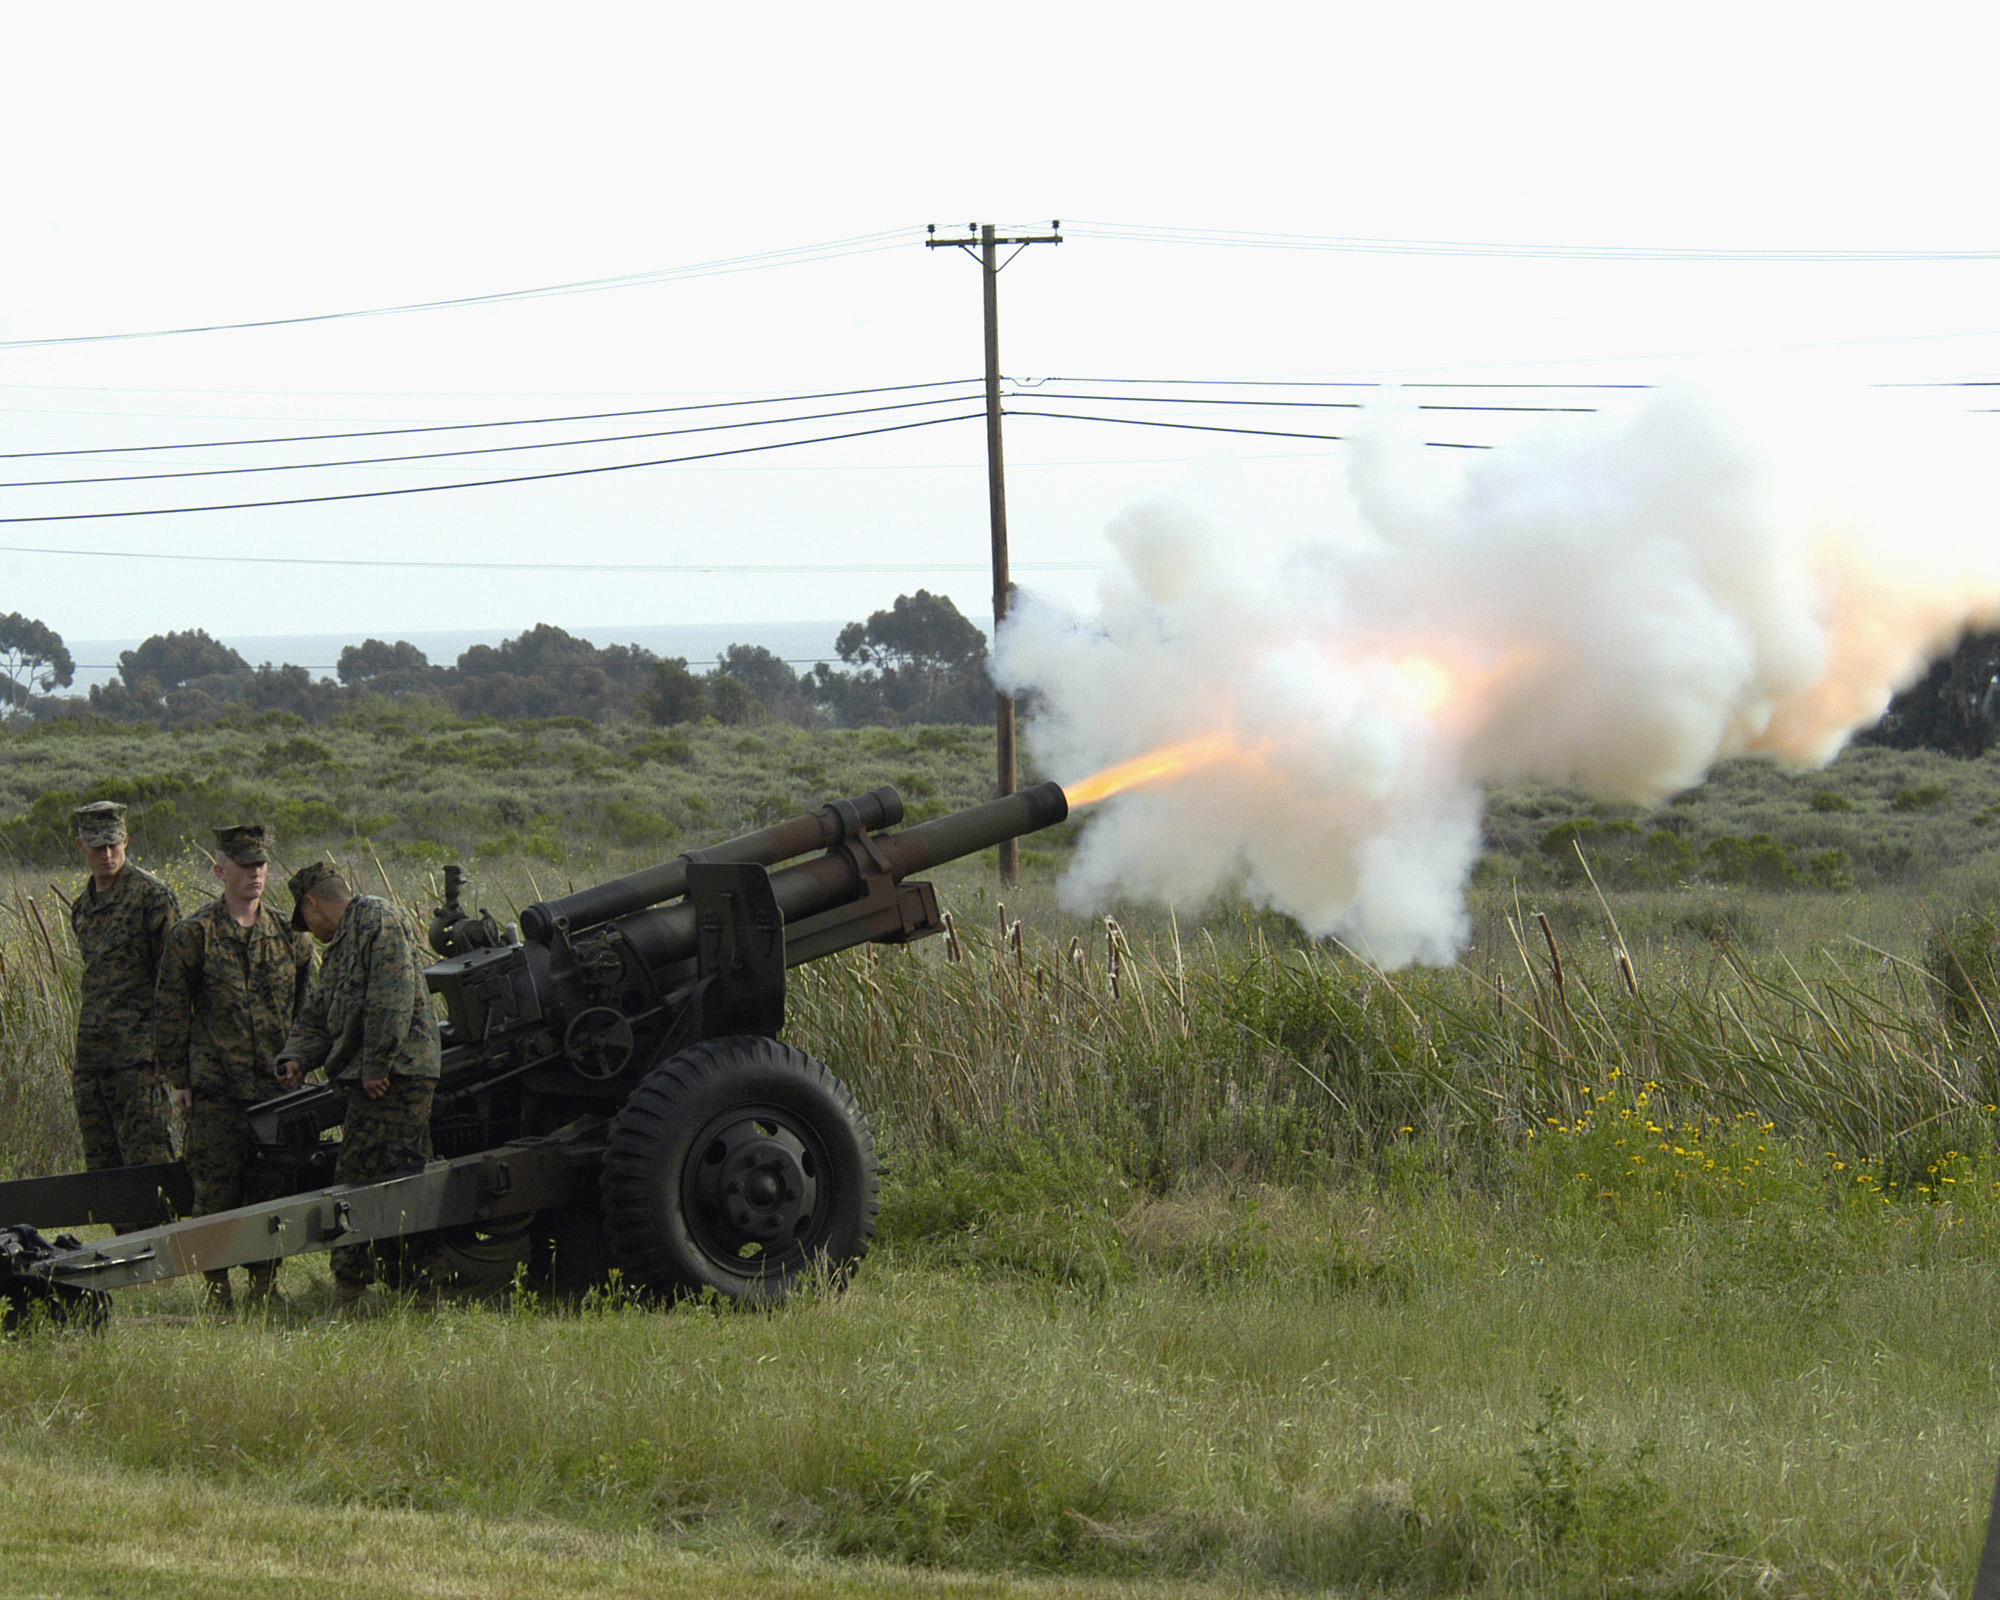 Litwa przekazała Ukrainie amerykańskie holowane haubice M101 105 mm, które mogą strzelać do 11 km